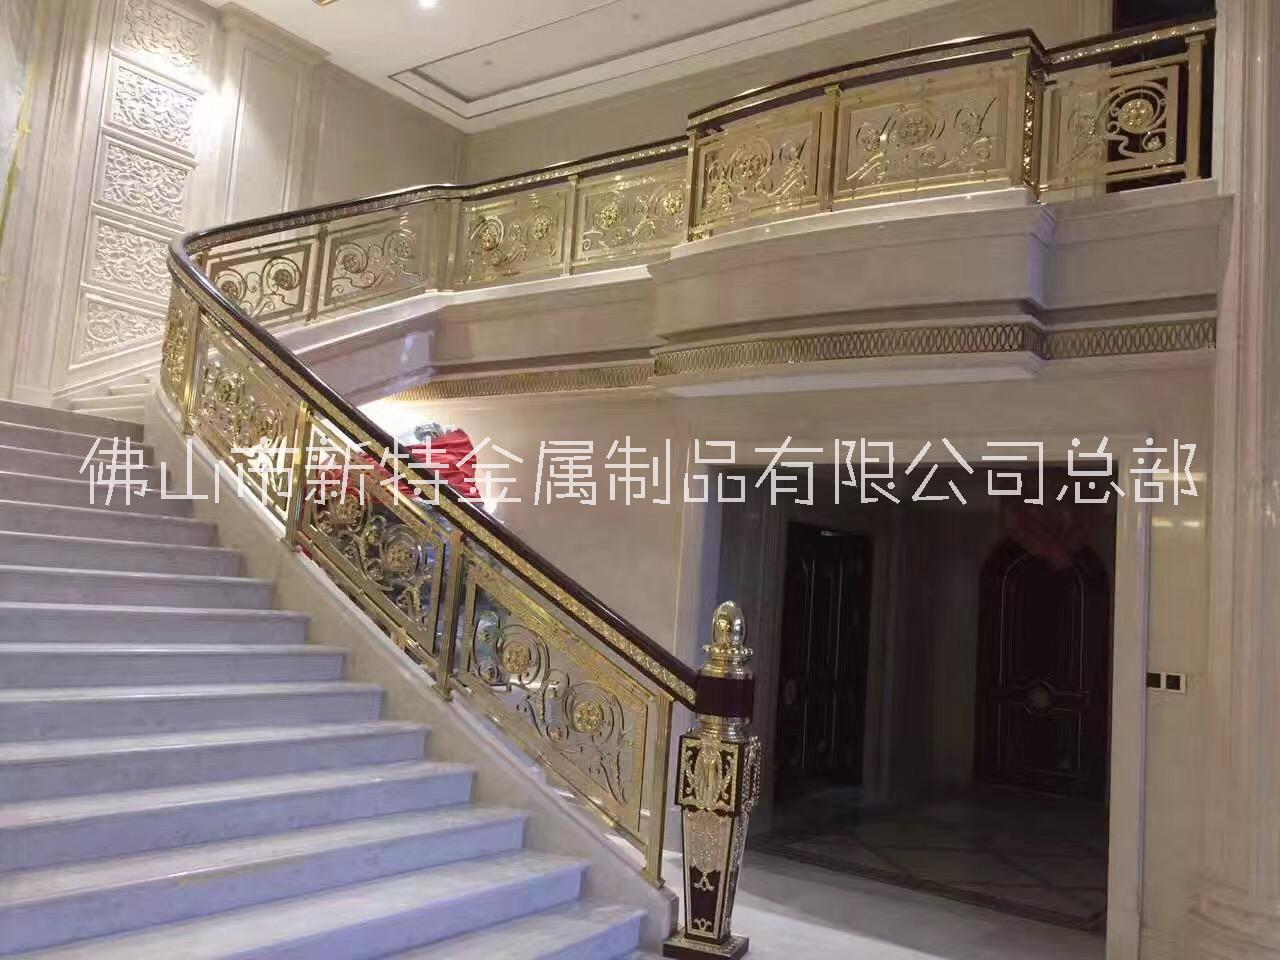 惹人喜欢的上海铜艺铝艺雕刻楼梯镂空扶手